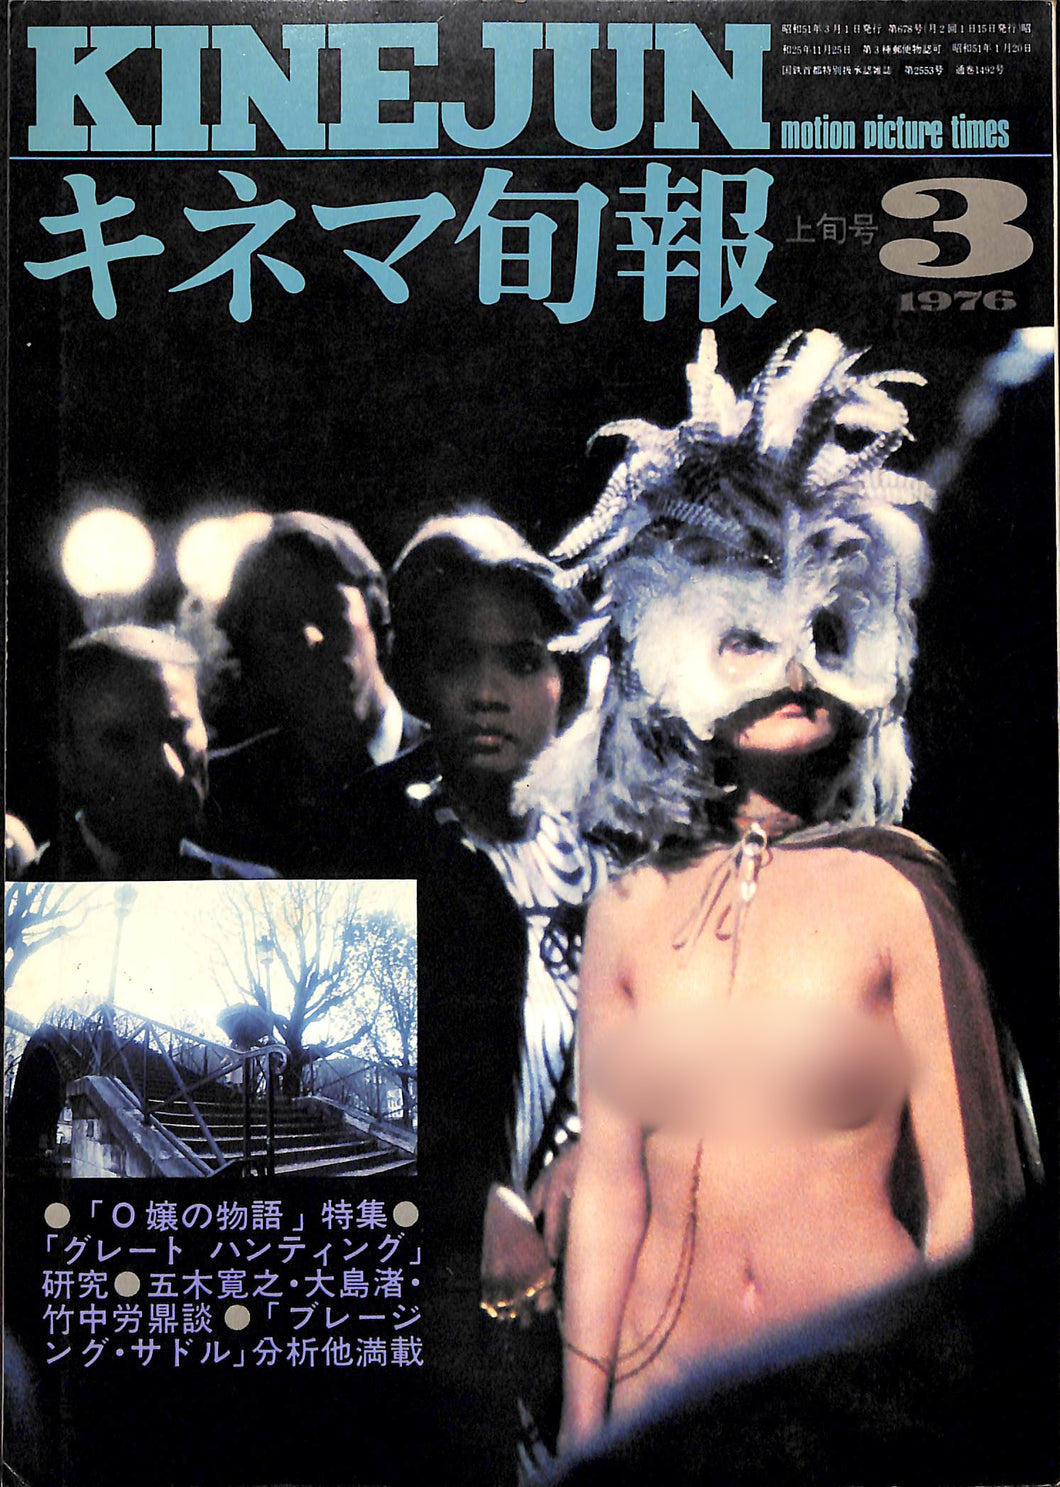 キネマ旬報 1976年3月 上旬号 表紙:O嬢の物語